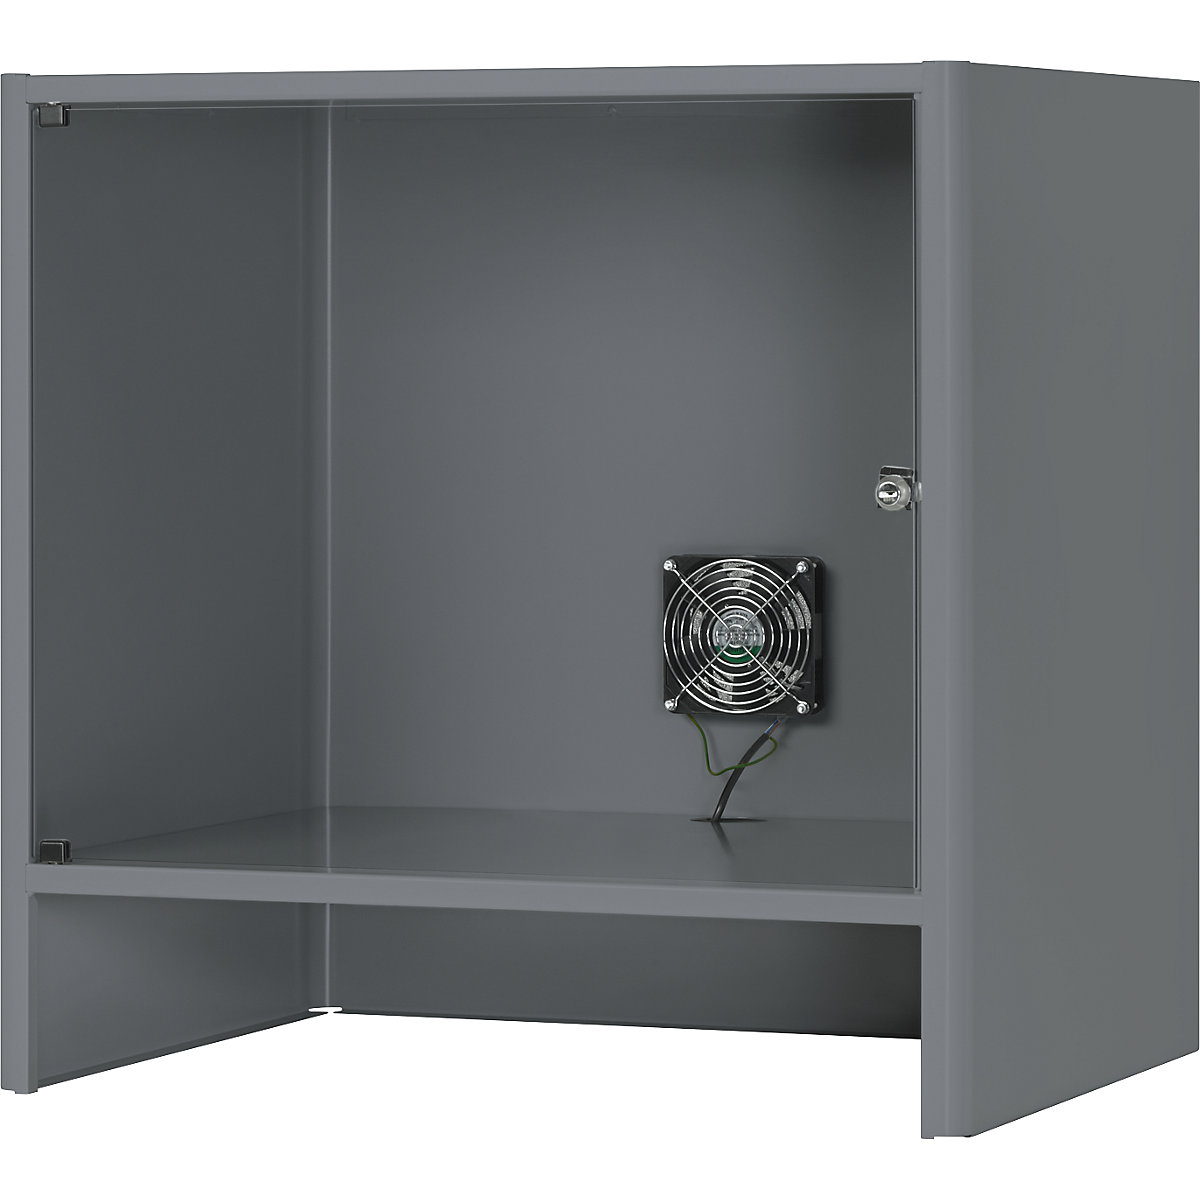 Compartimento para monitor con ventilación activa integrada – RAU